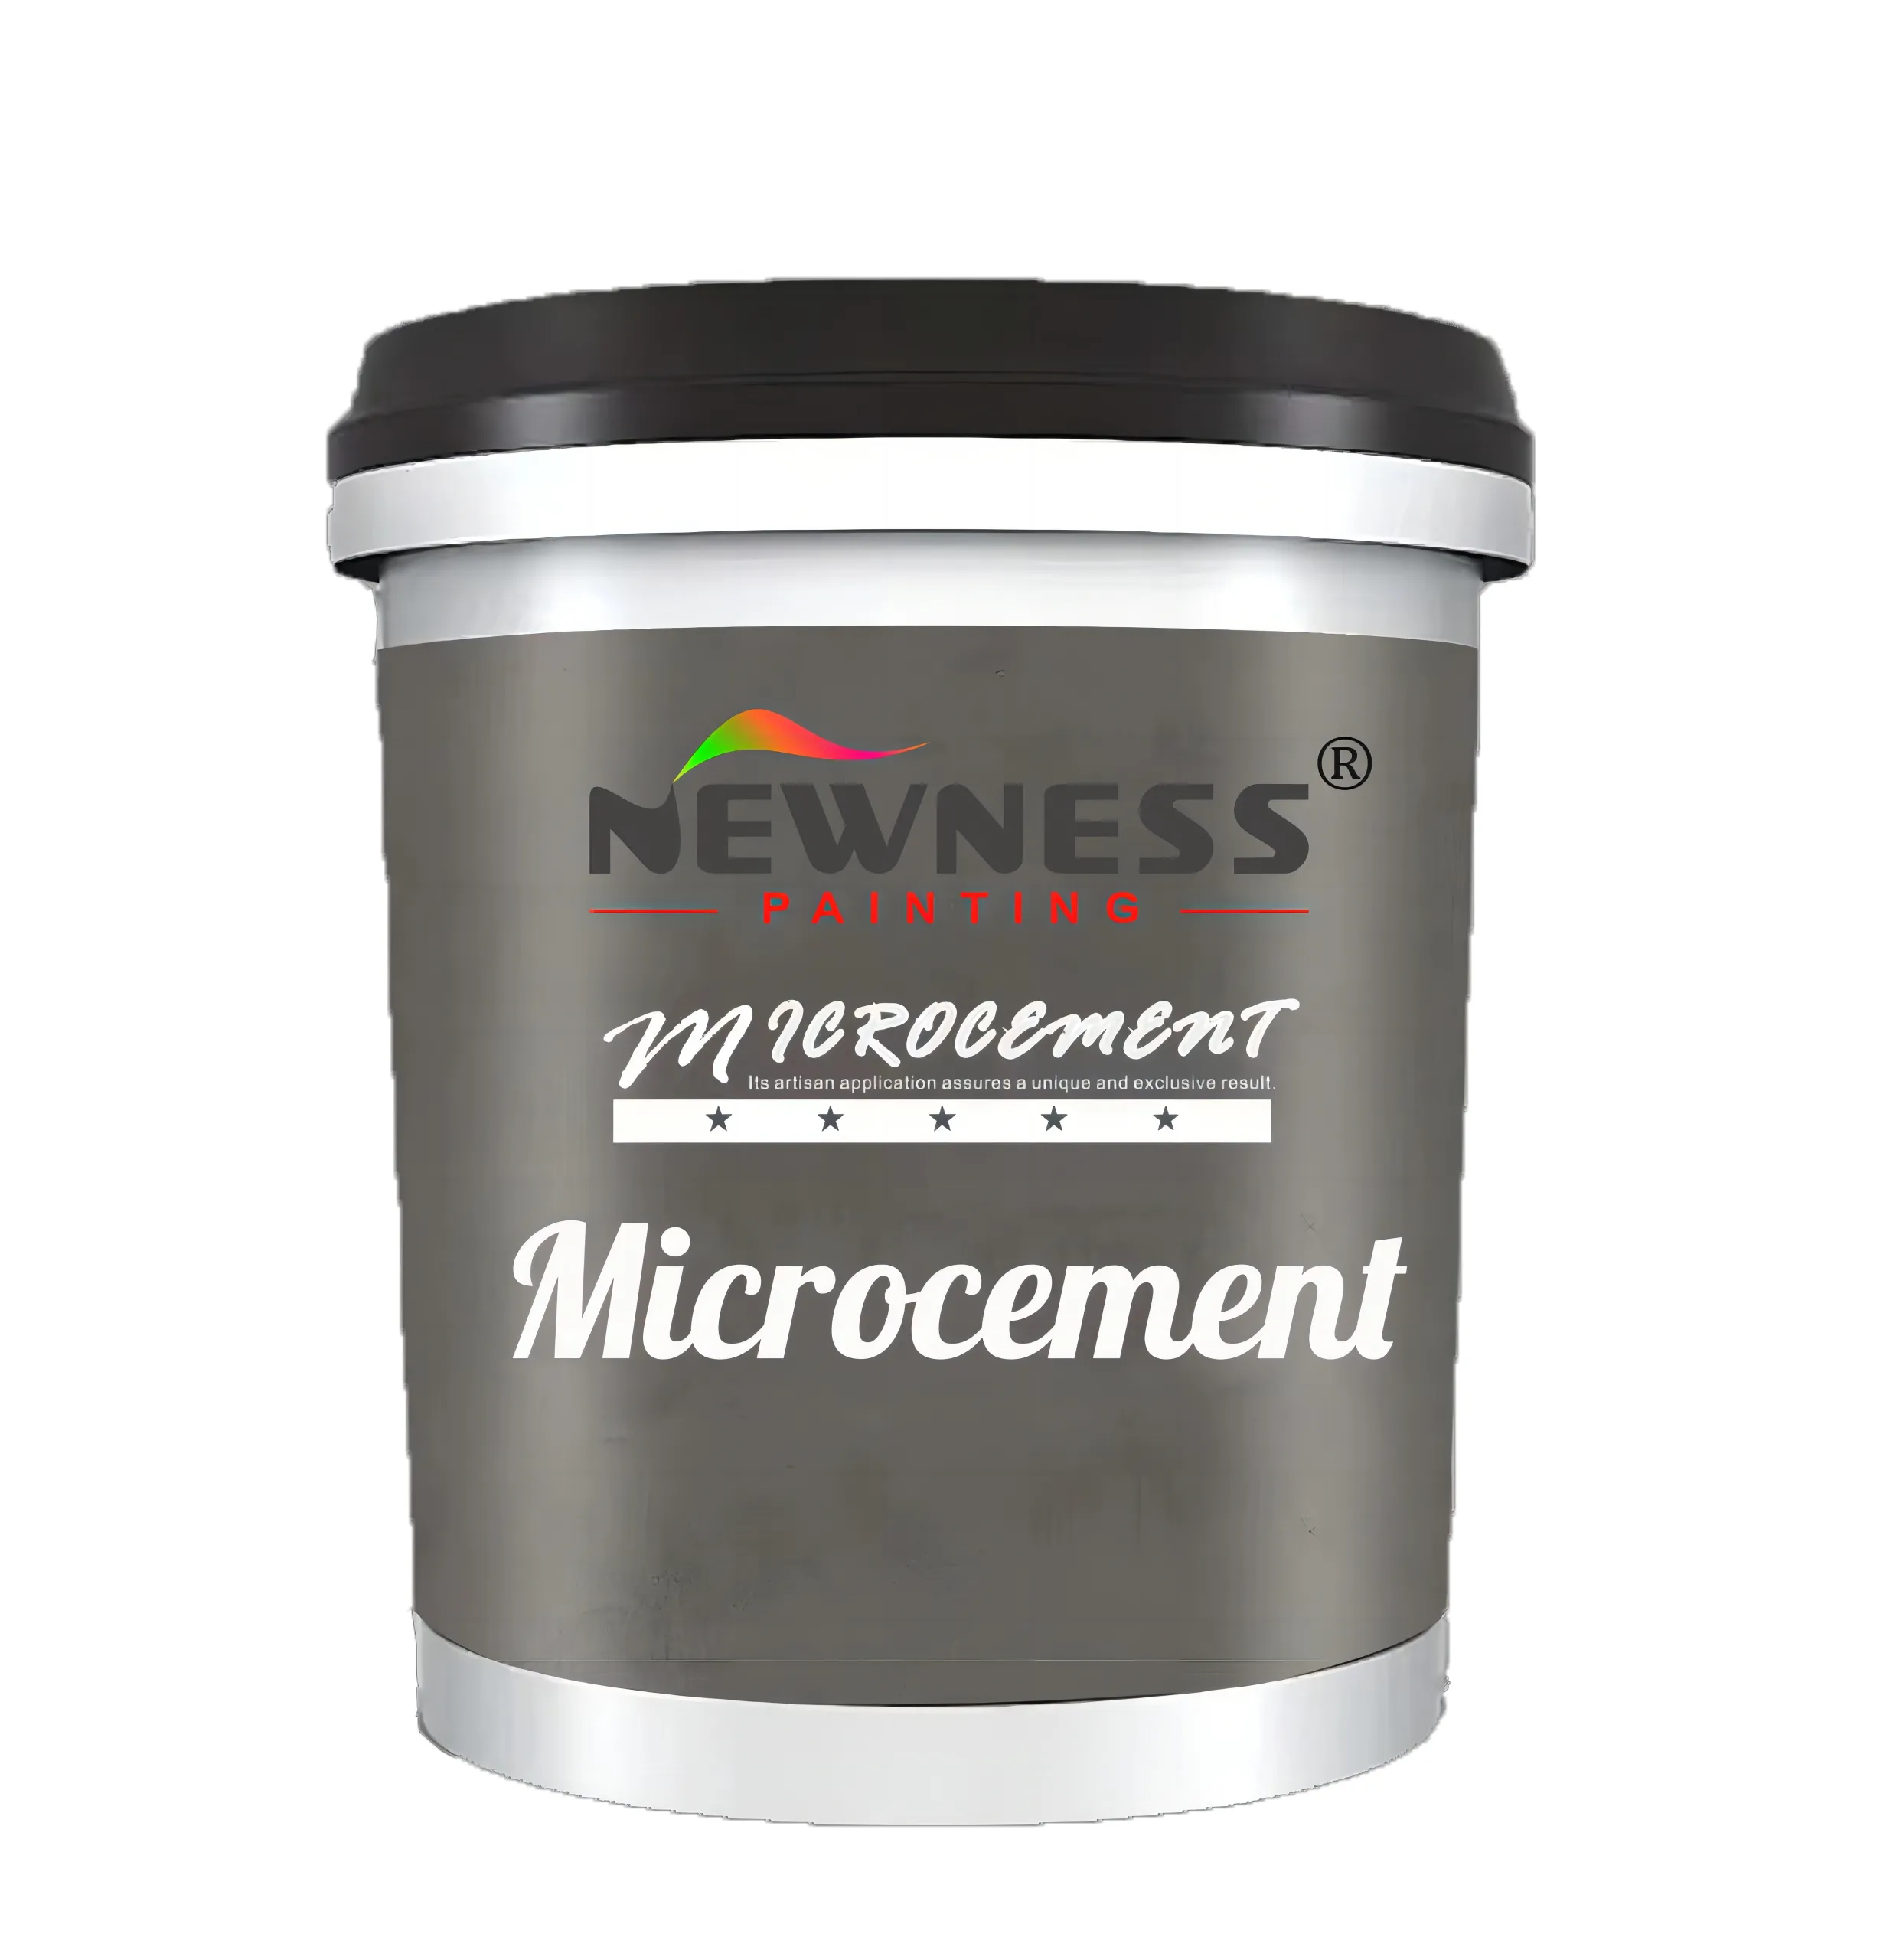 NEWNESS Micro cemento prezzo Slip-resistant Feel grossolana/media/fine Sand microtement Price vernice per microcalcement